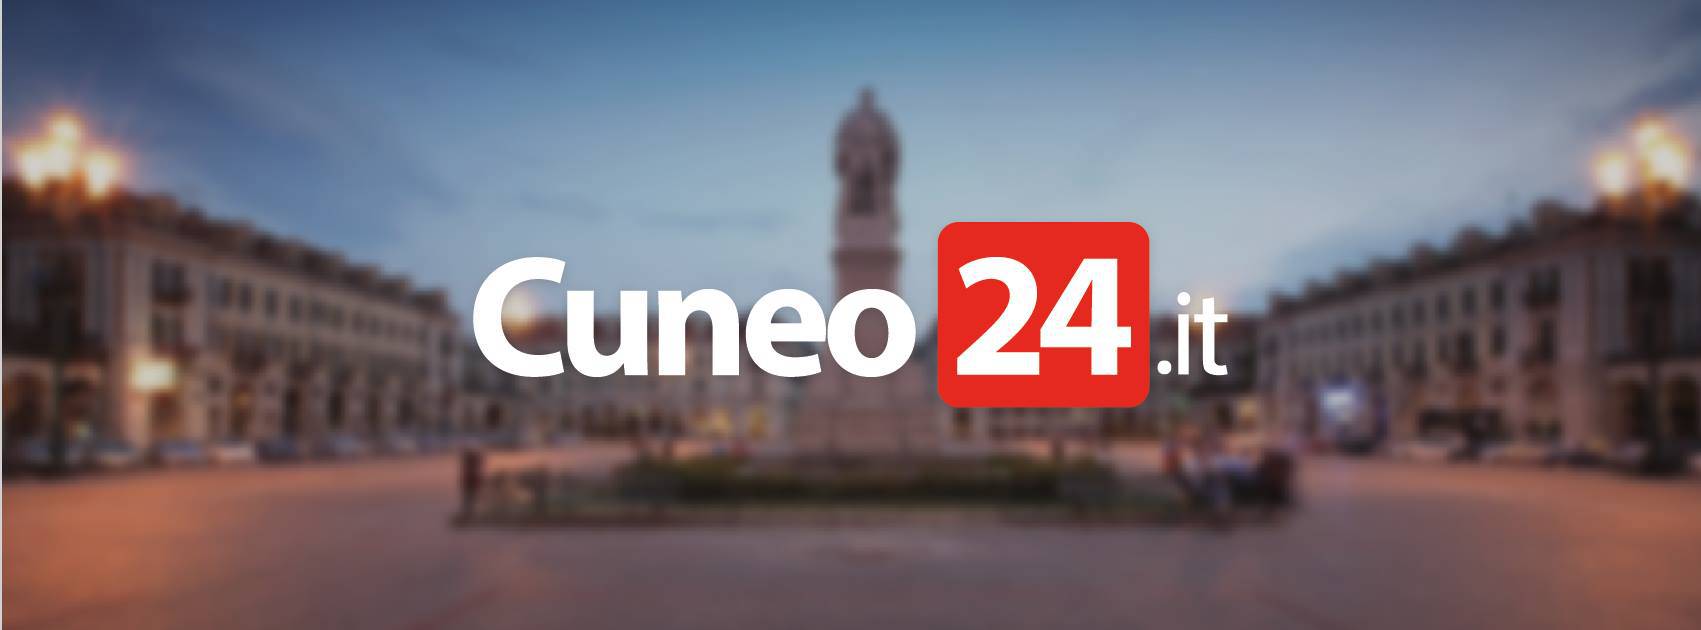 I dieci articoli più letti del 2021 su Cuneo24.it